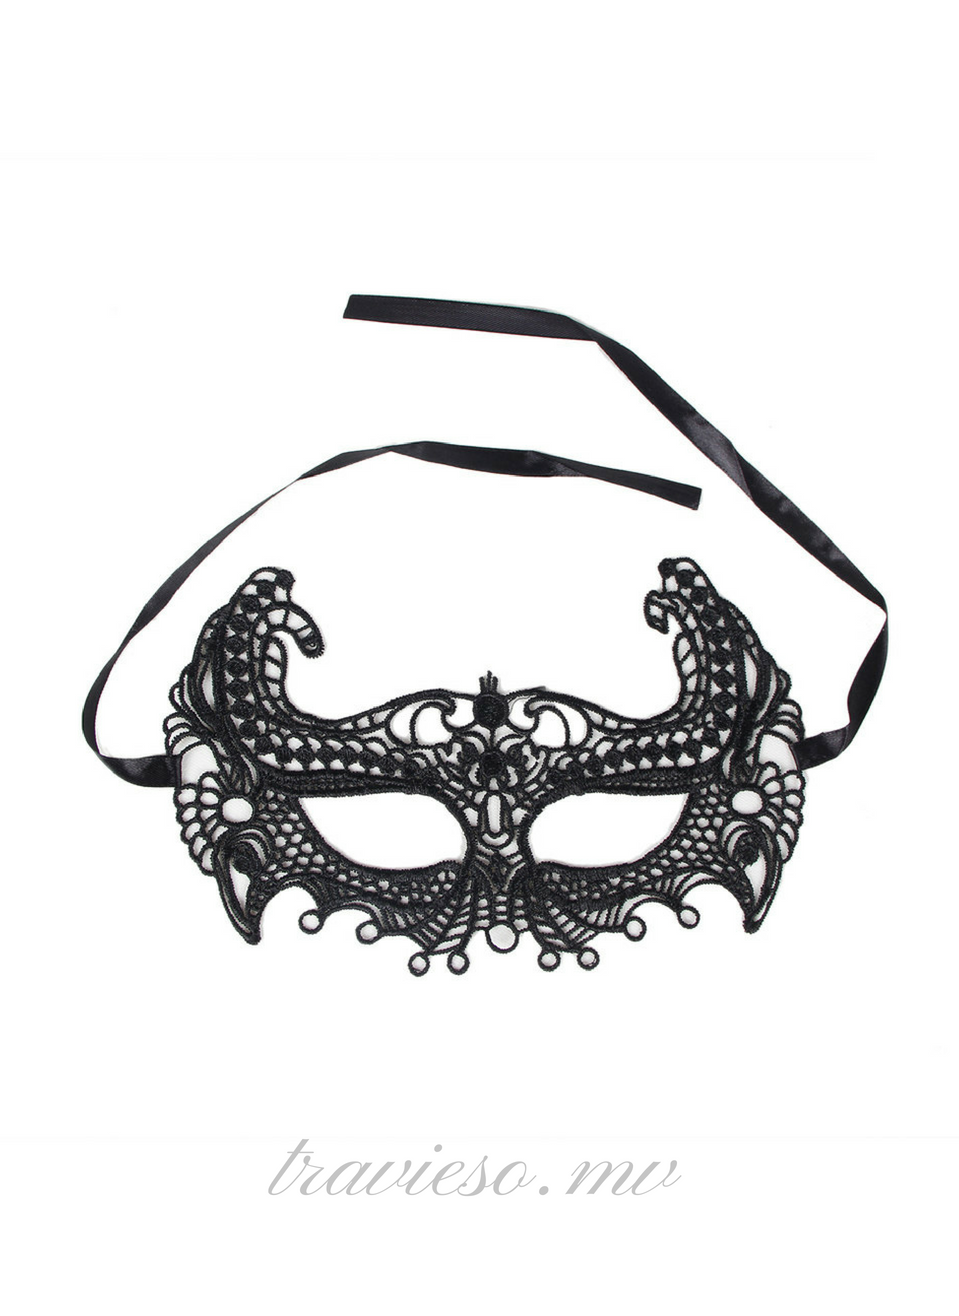 Enchanting Black Lace eye mask - travieso.mv